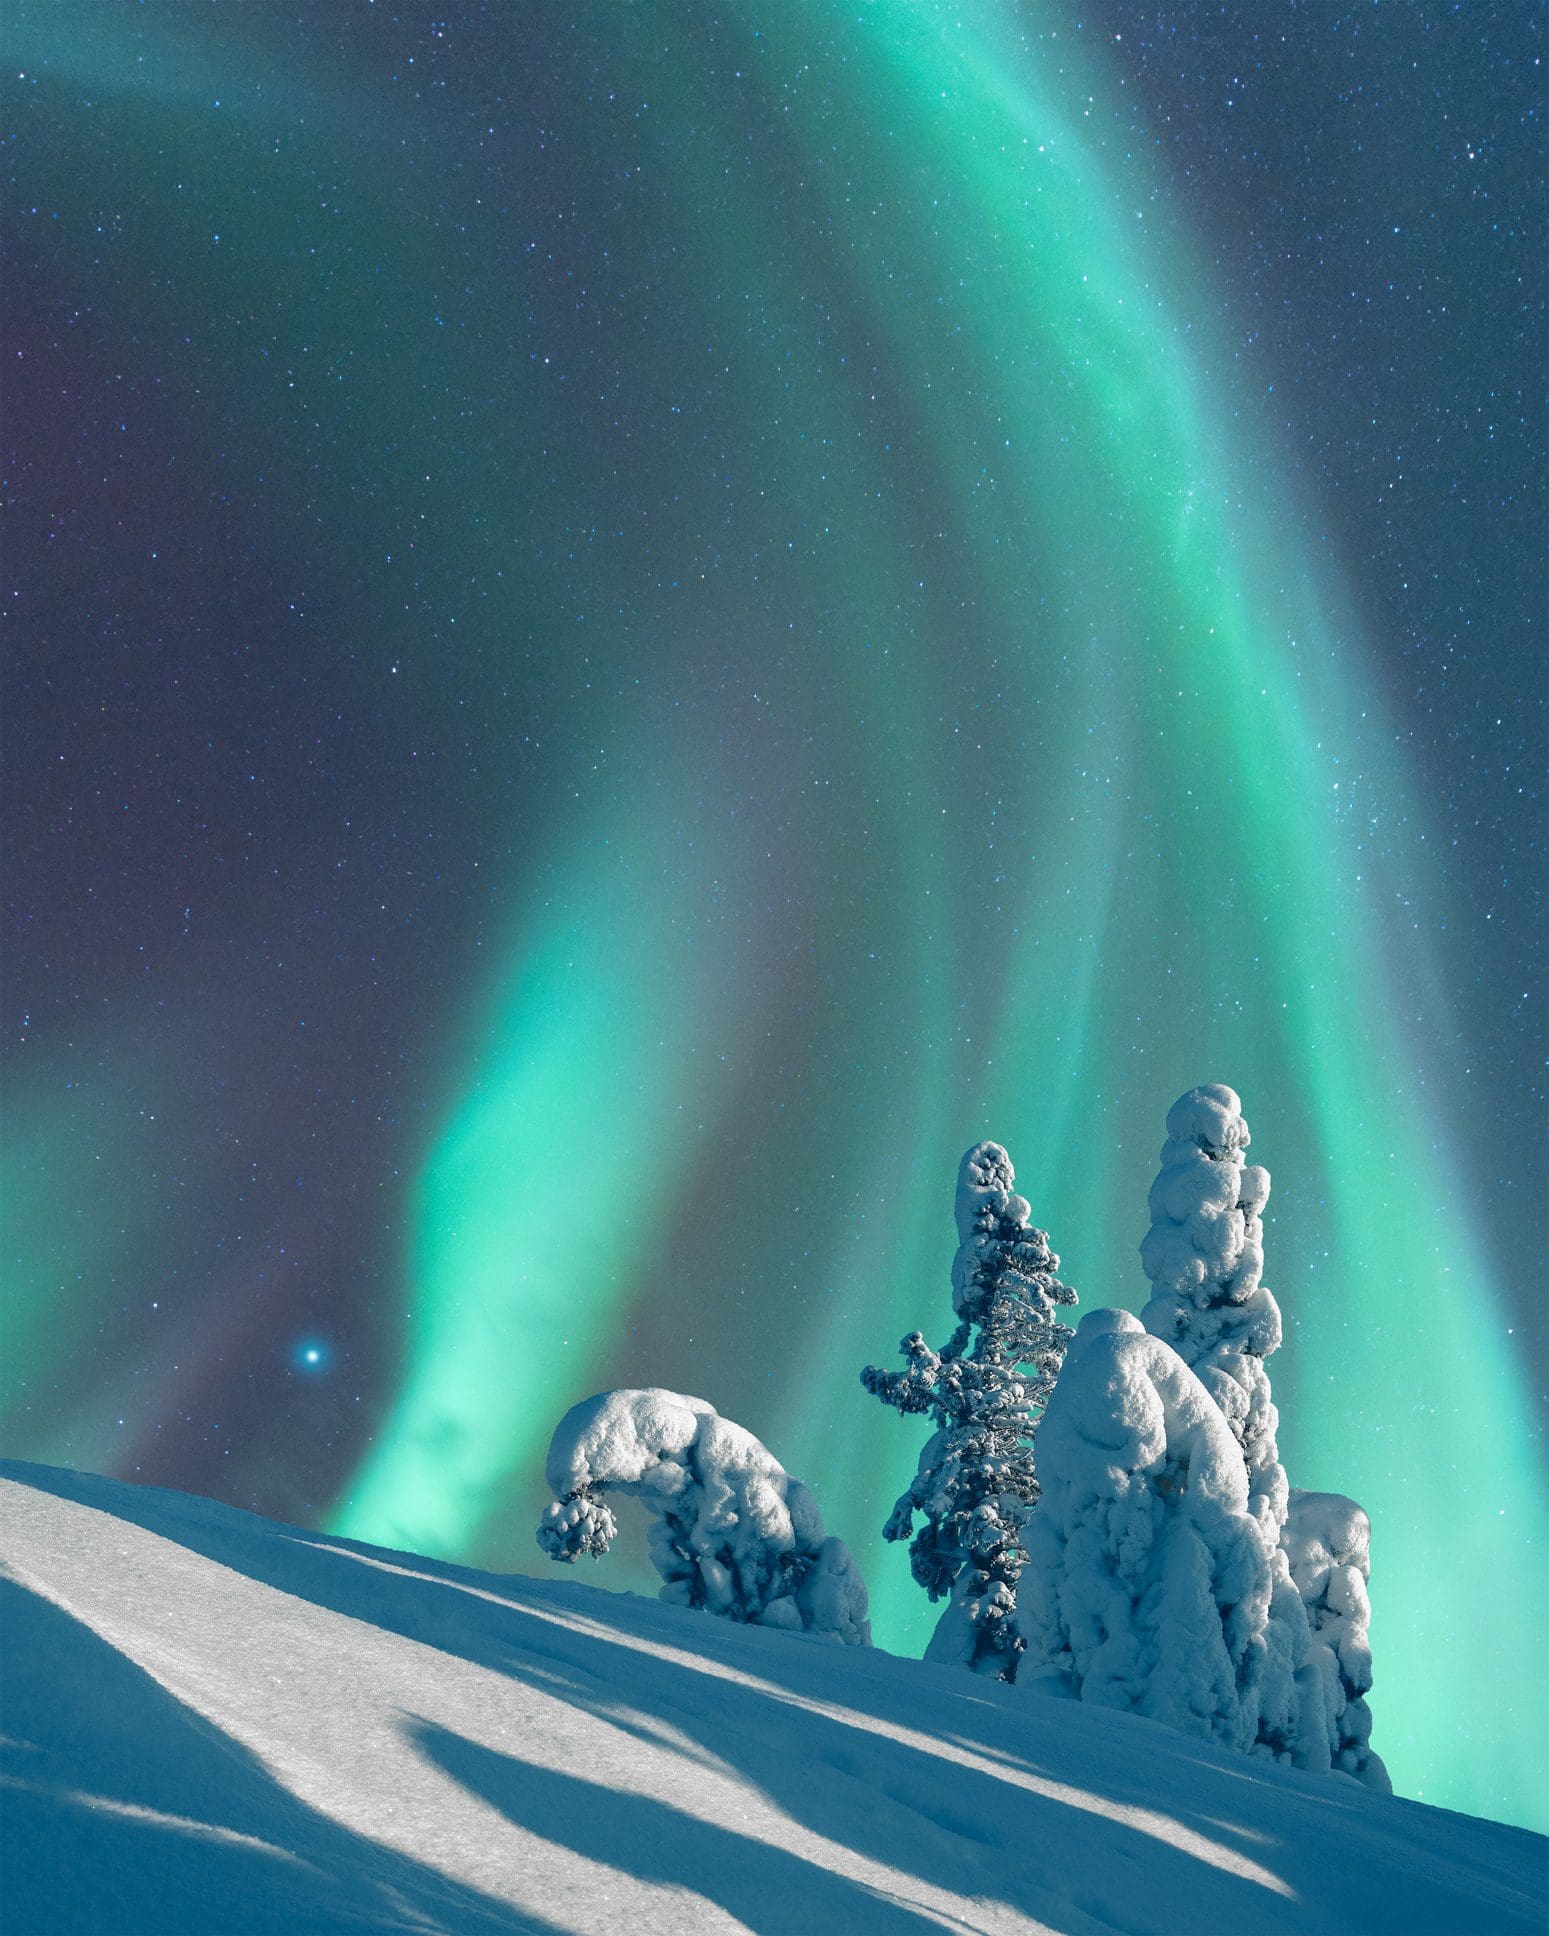 Aurora Boreal, Luces del Norte, sobre un paisaje invernal iluminado por la luna, árboles de abeto cubiertos de escarcha y nieve, Parque Nacional Koli, Finlandia Oriental.